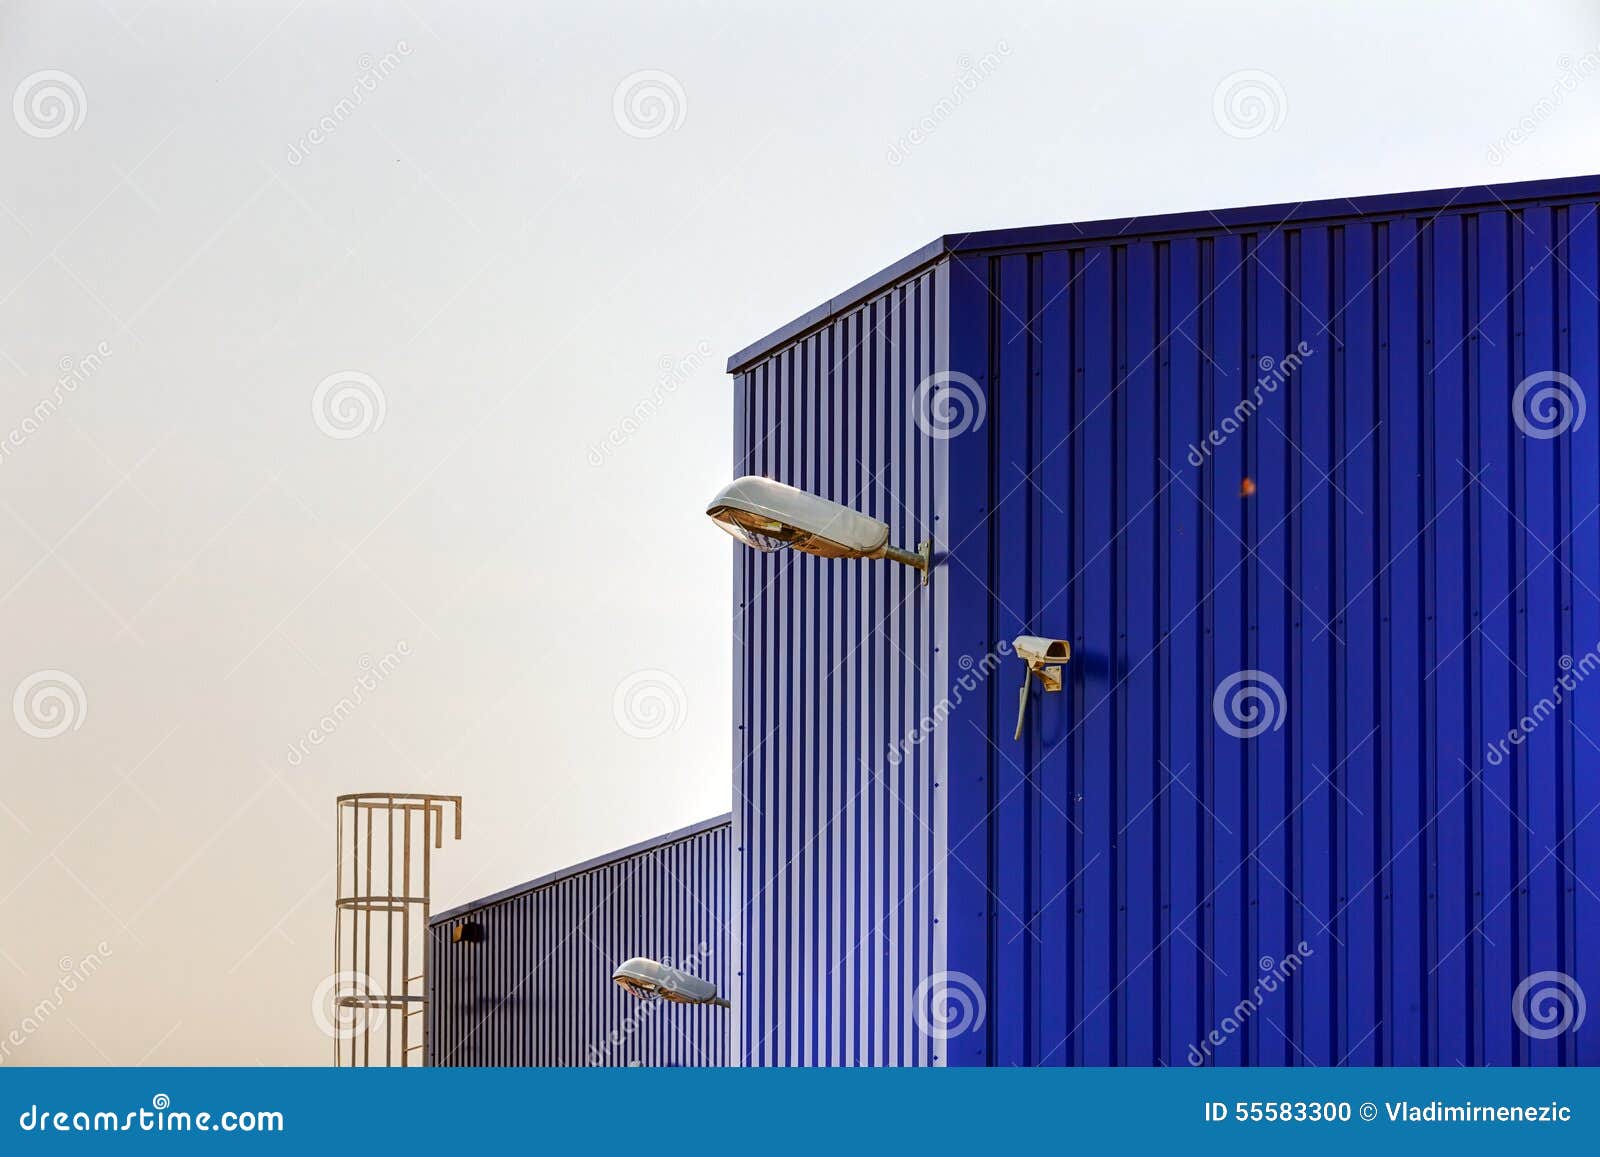 Blue aluminum facade stock photo. Image of coating, blue - 55583300